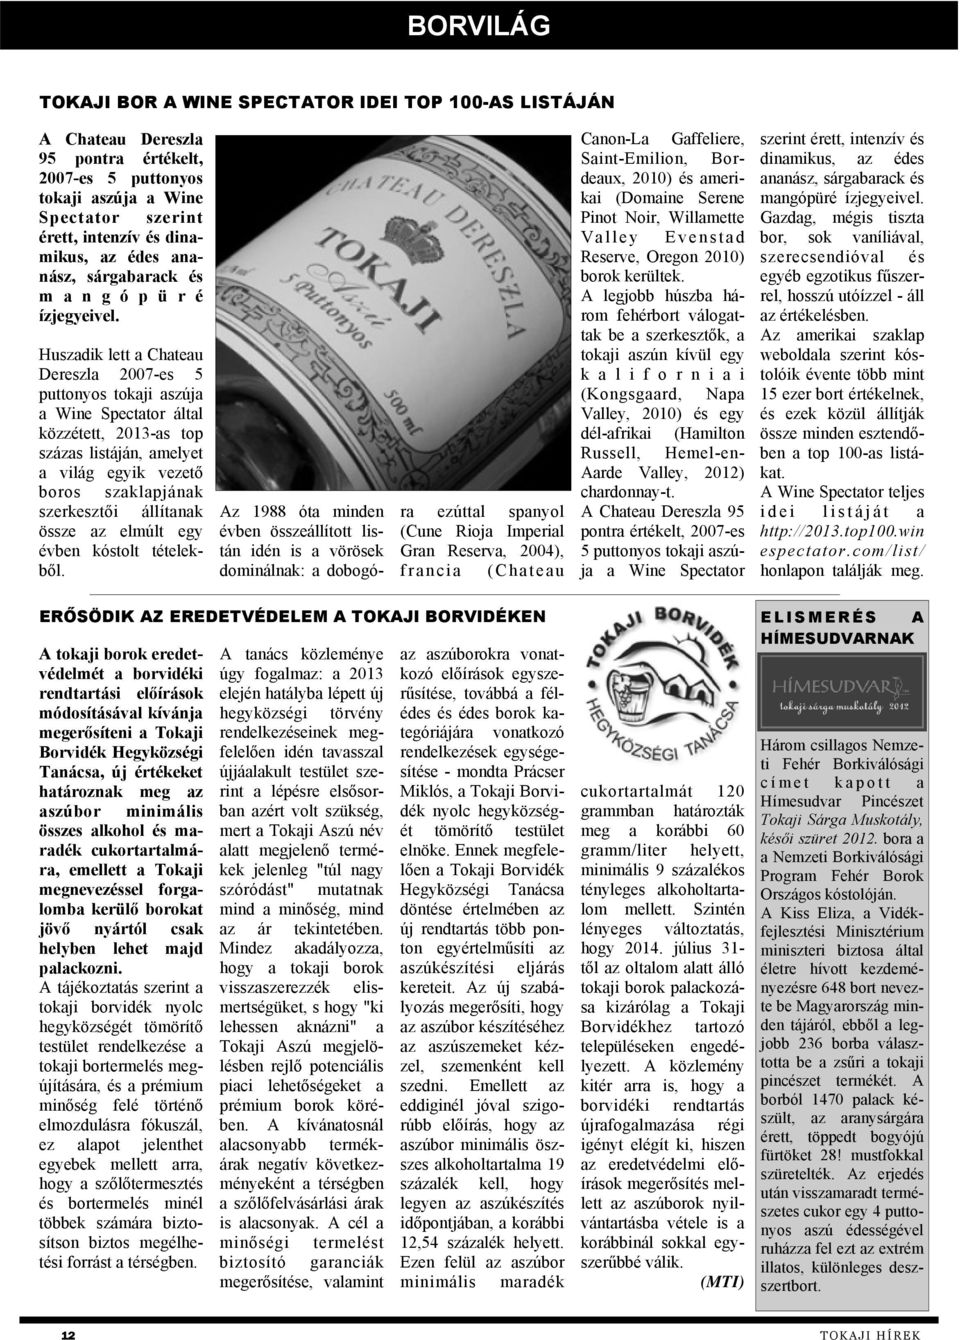 Huszadik lett a Chateau Dereszla 2007-es 5 puttonyos tokaji aszúja a Wine Spectator által közzétett, 2013-as top százas listáján, amelyet a világ egyik vezető boros szaklapjának szerkesztői állítanak